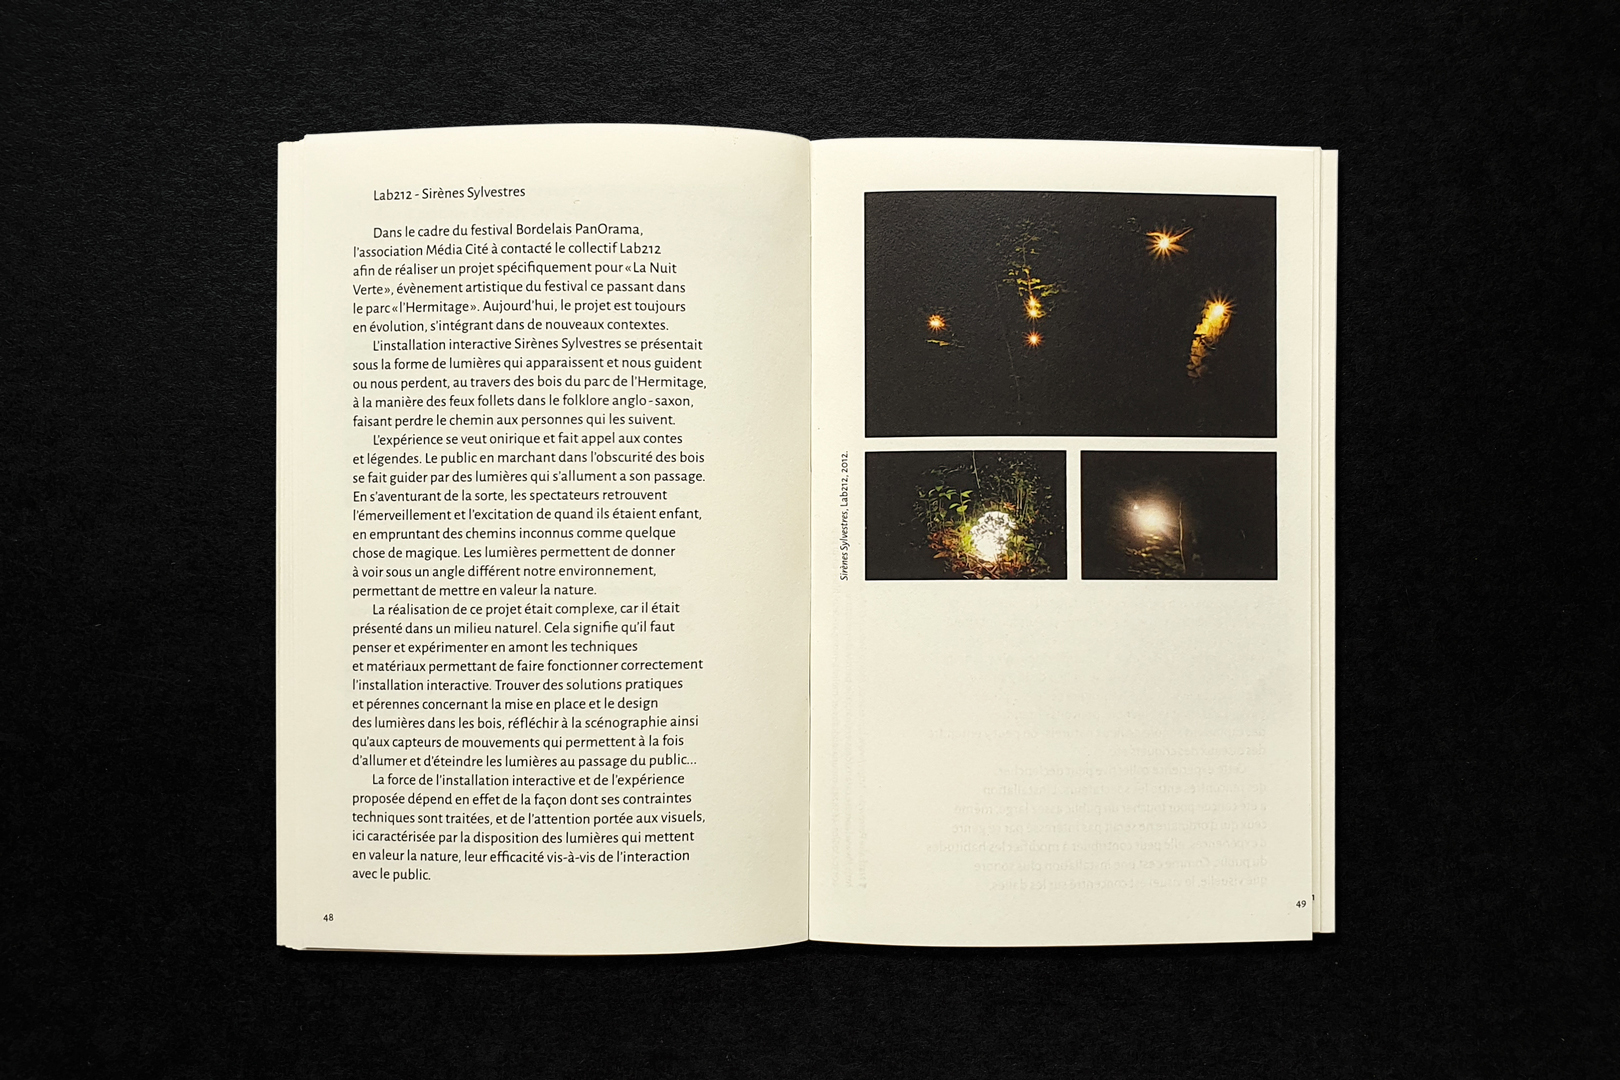 Installations interactives mémoire (master), édition, image 11, 2019, Sybille Clemente, designer graphique.